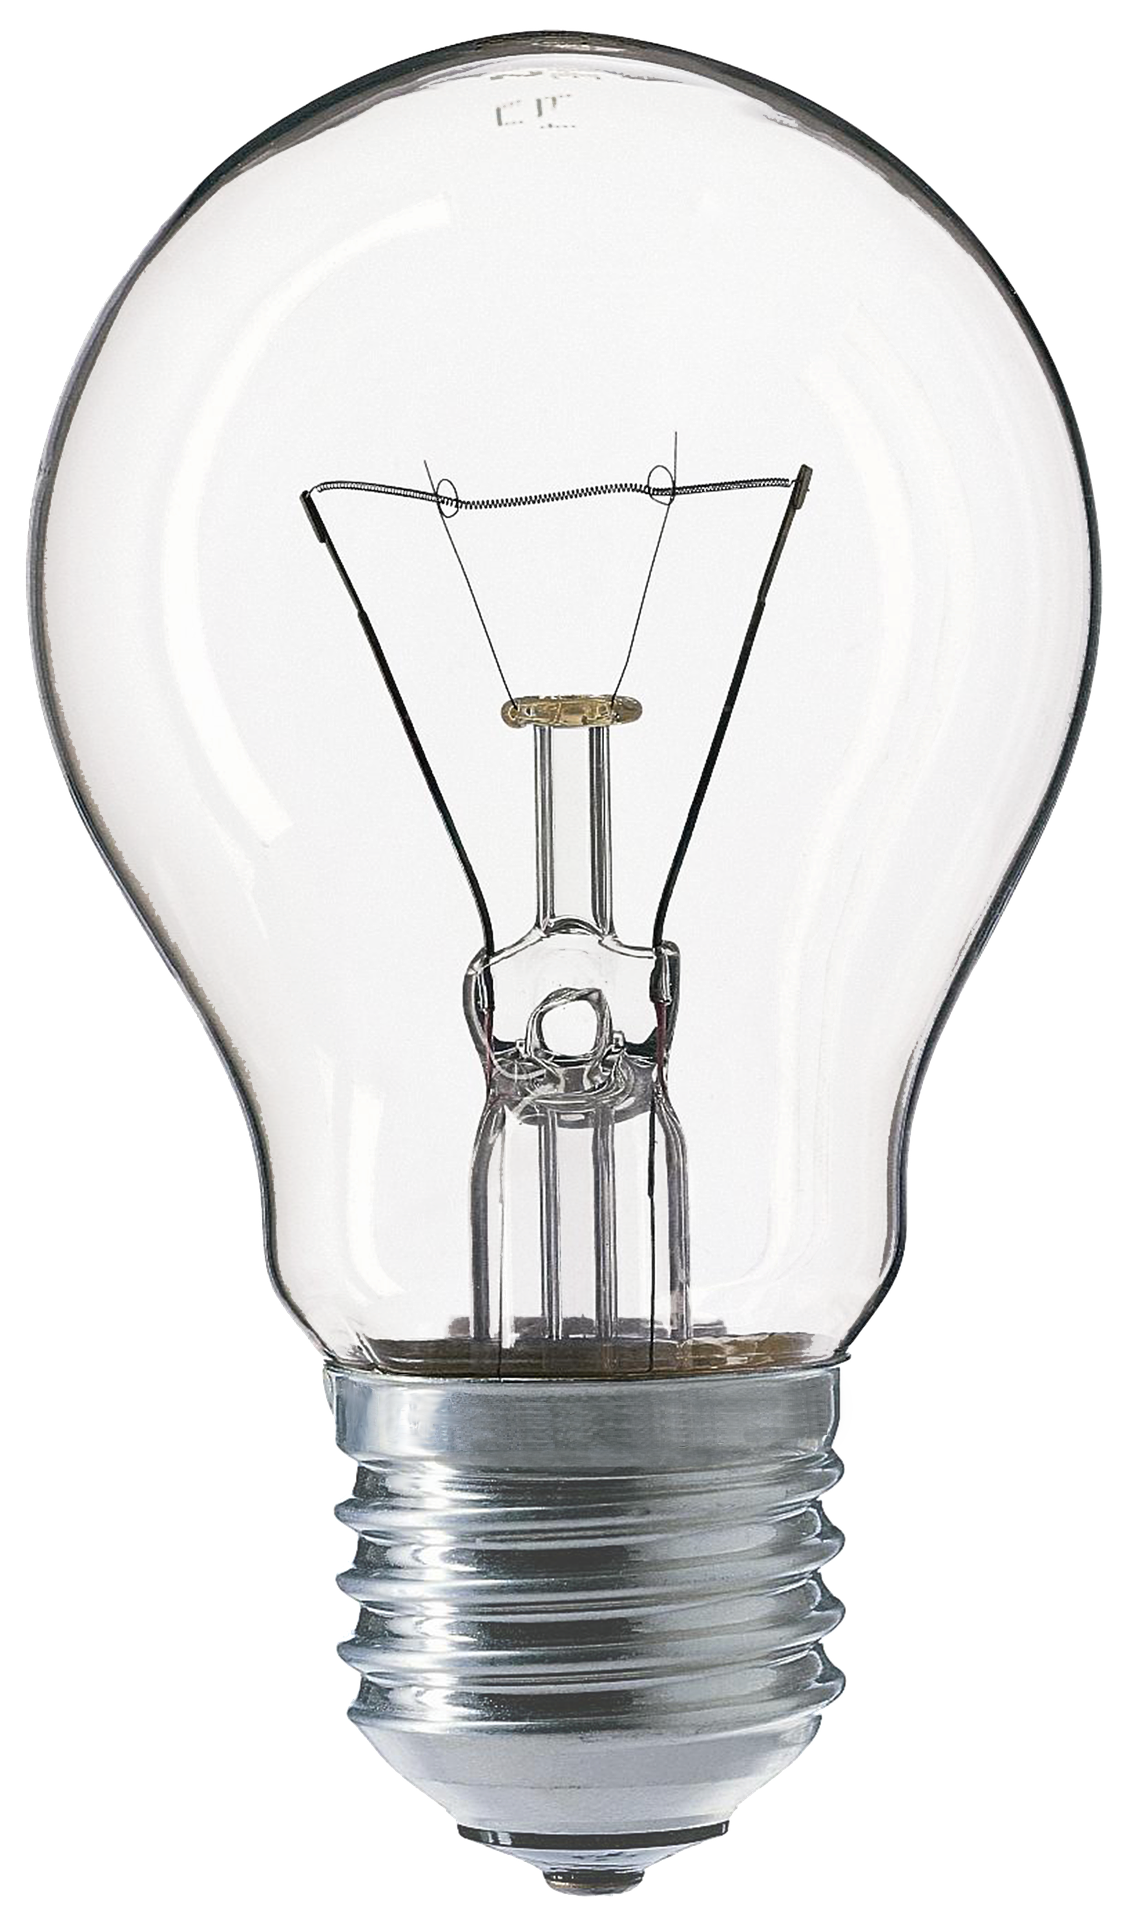 lightbulb-detailed